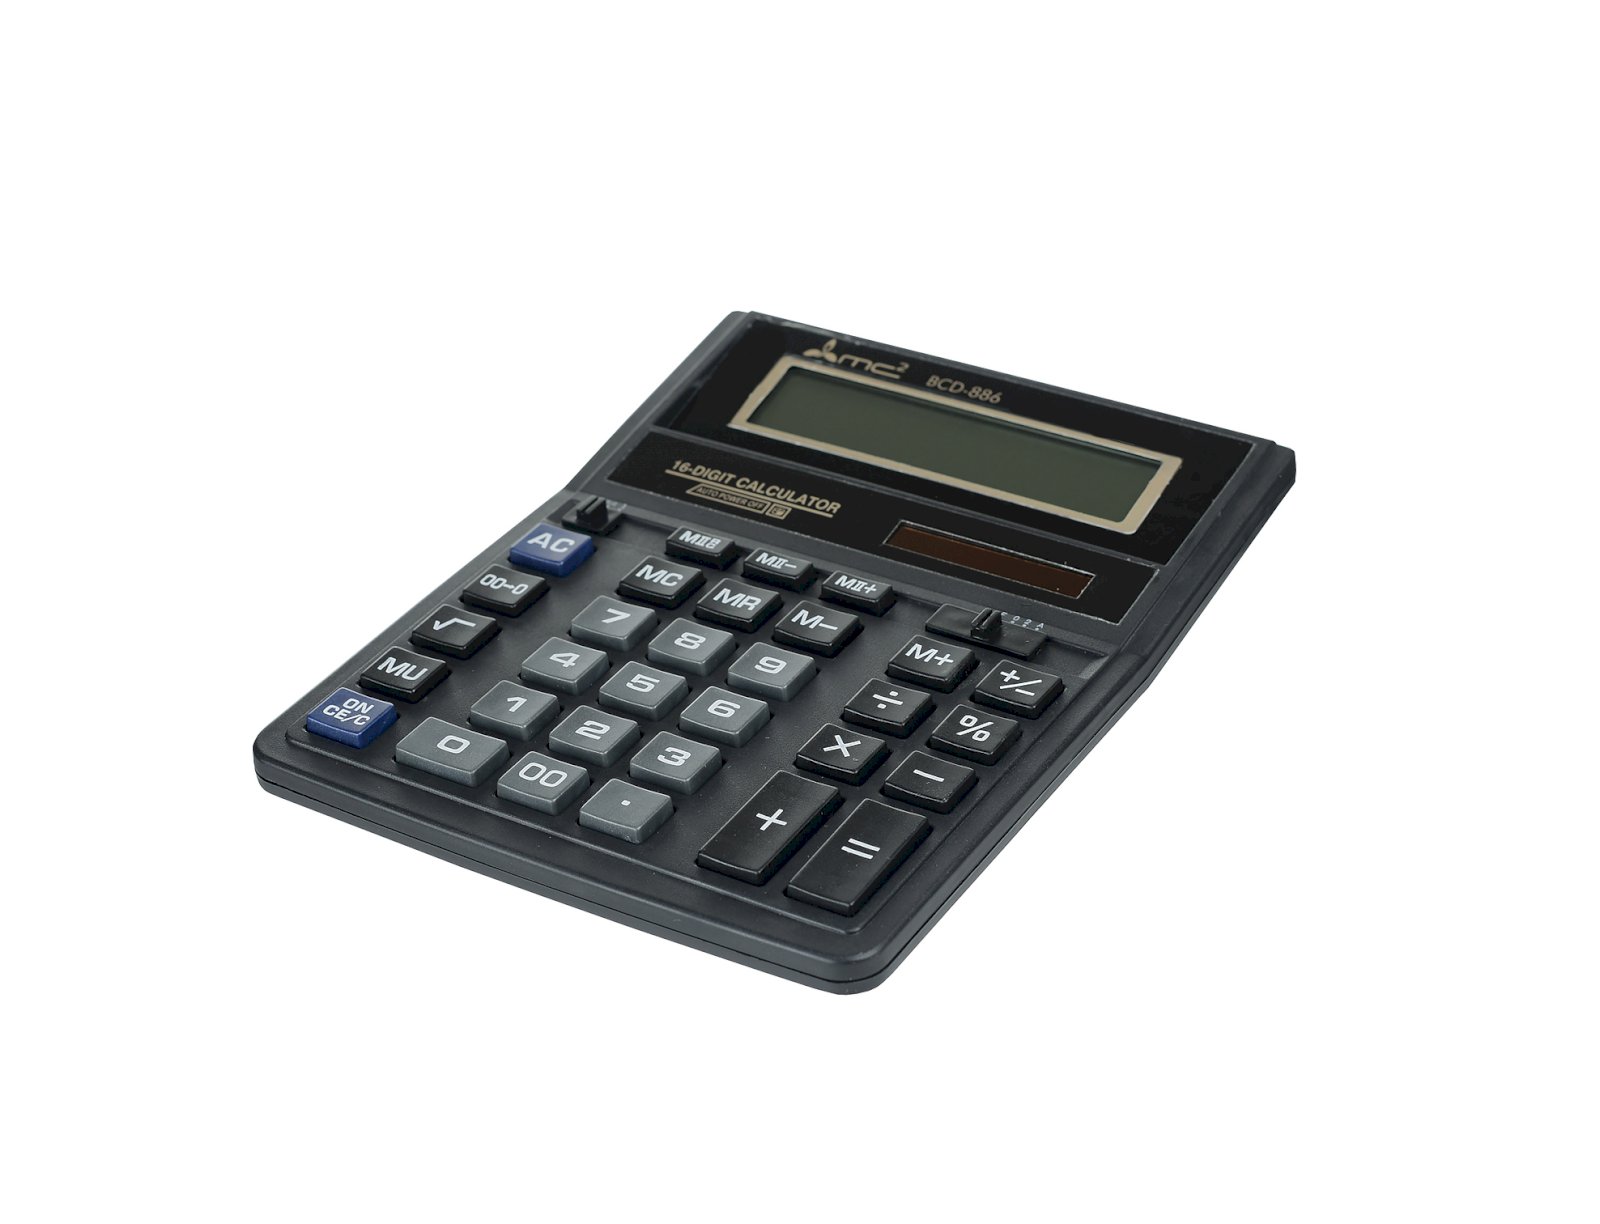 Калькулятор МС2 BCD-886 в пластиковом корпусе с 16-разрядным ЖК-дисплеем. Имеет оптимальный набор вычислительных функций: основные математические операции, расчет процентов, извлечение квадратного корня, запоминание промежуточных результатов. Удобная клавиатура снабжена кнопкой ввода двойного нуля. Питание калькулятора автоматически отключается после пяти минут бездействия. Размер: 159 х 203 х 23 мм. Вес: 232г.